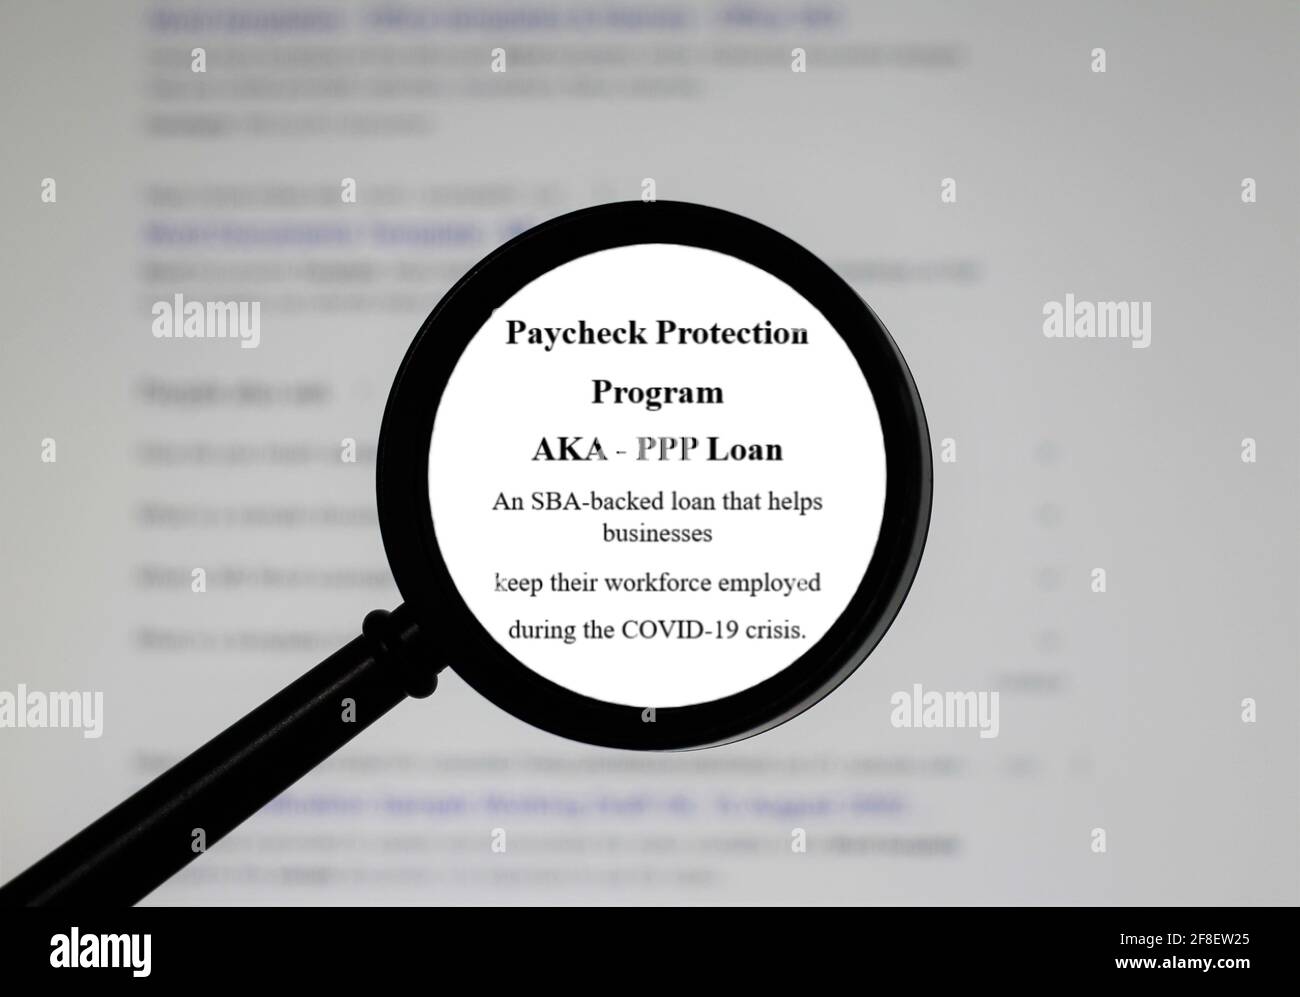 Programma di protezione di paga di parola prestito di PPP, parola in un dizionario. Primo piano di una pagina di dizionario inglese con la parola Paycheck Protection Program PPP Foto Stock